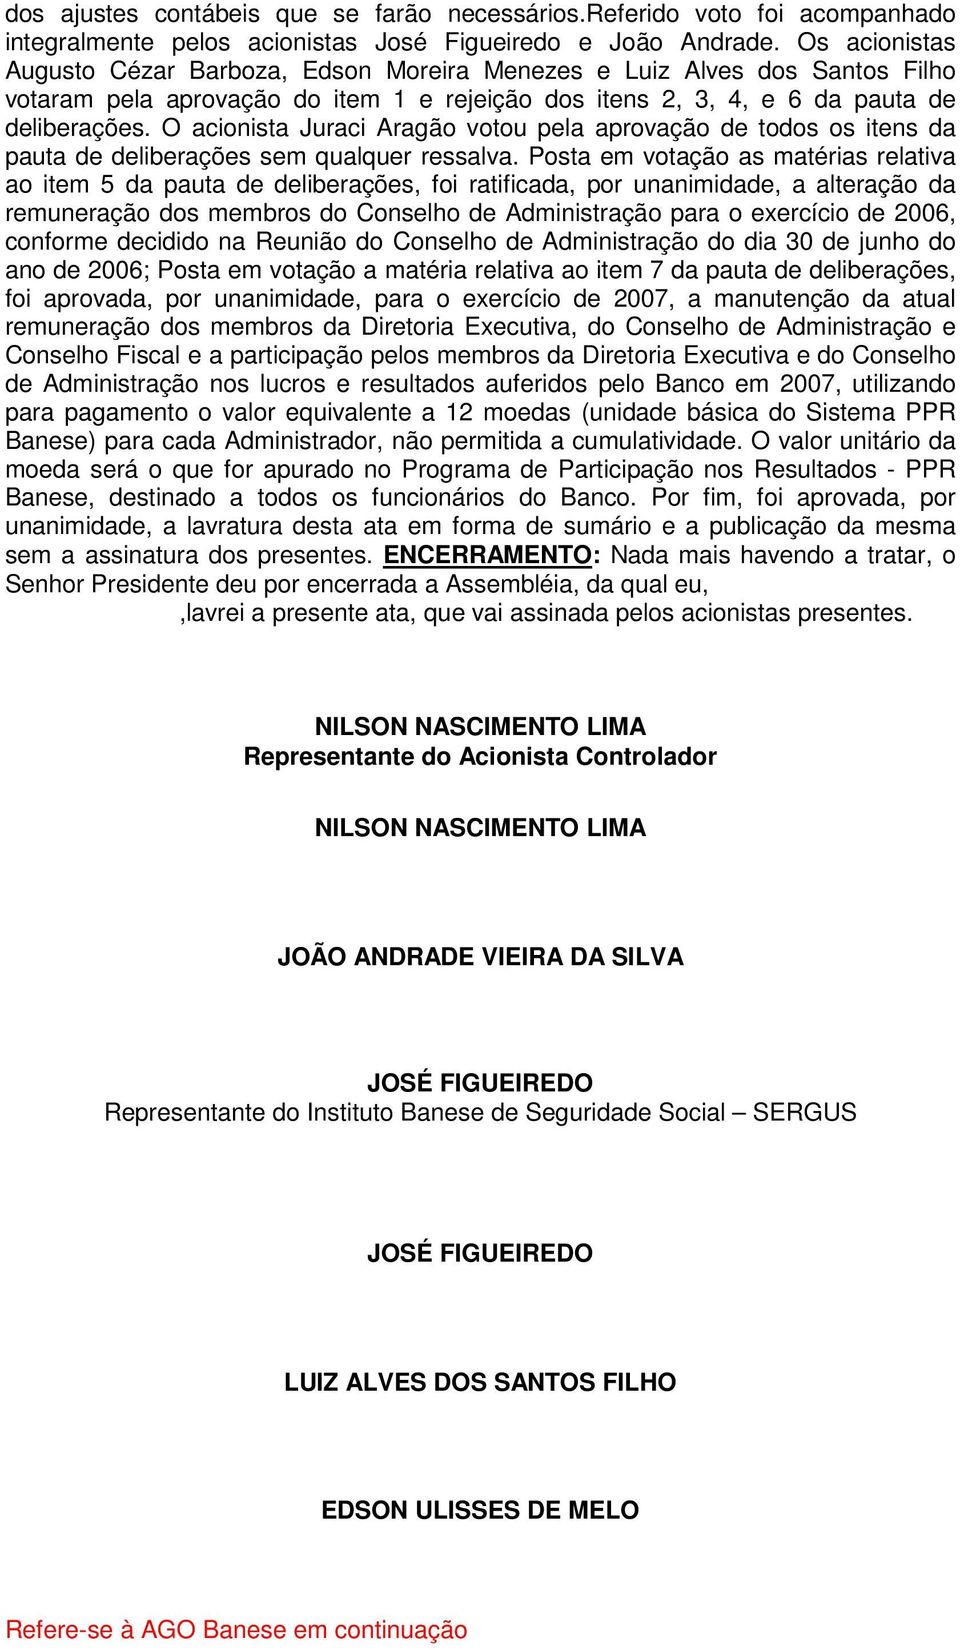 O acionista Juraci Aragão votou pela aprovação de todos os itens da pauta de deliberações sem qualquer ressalva.